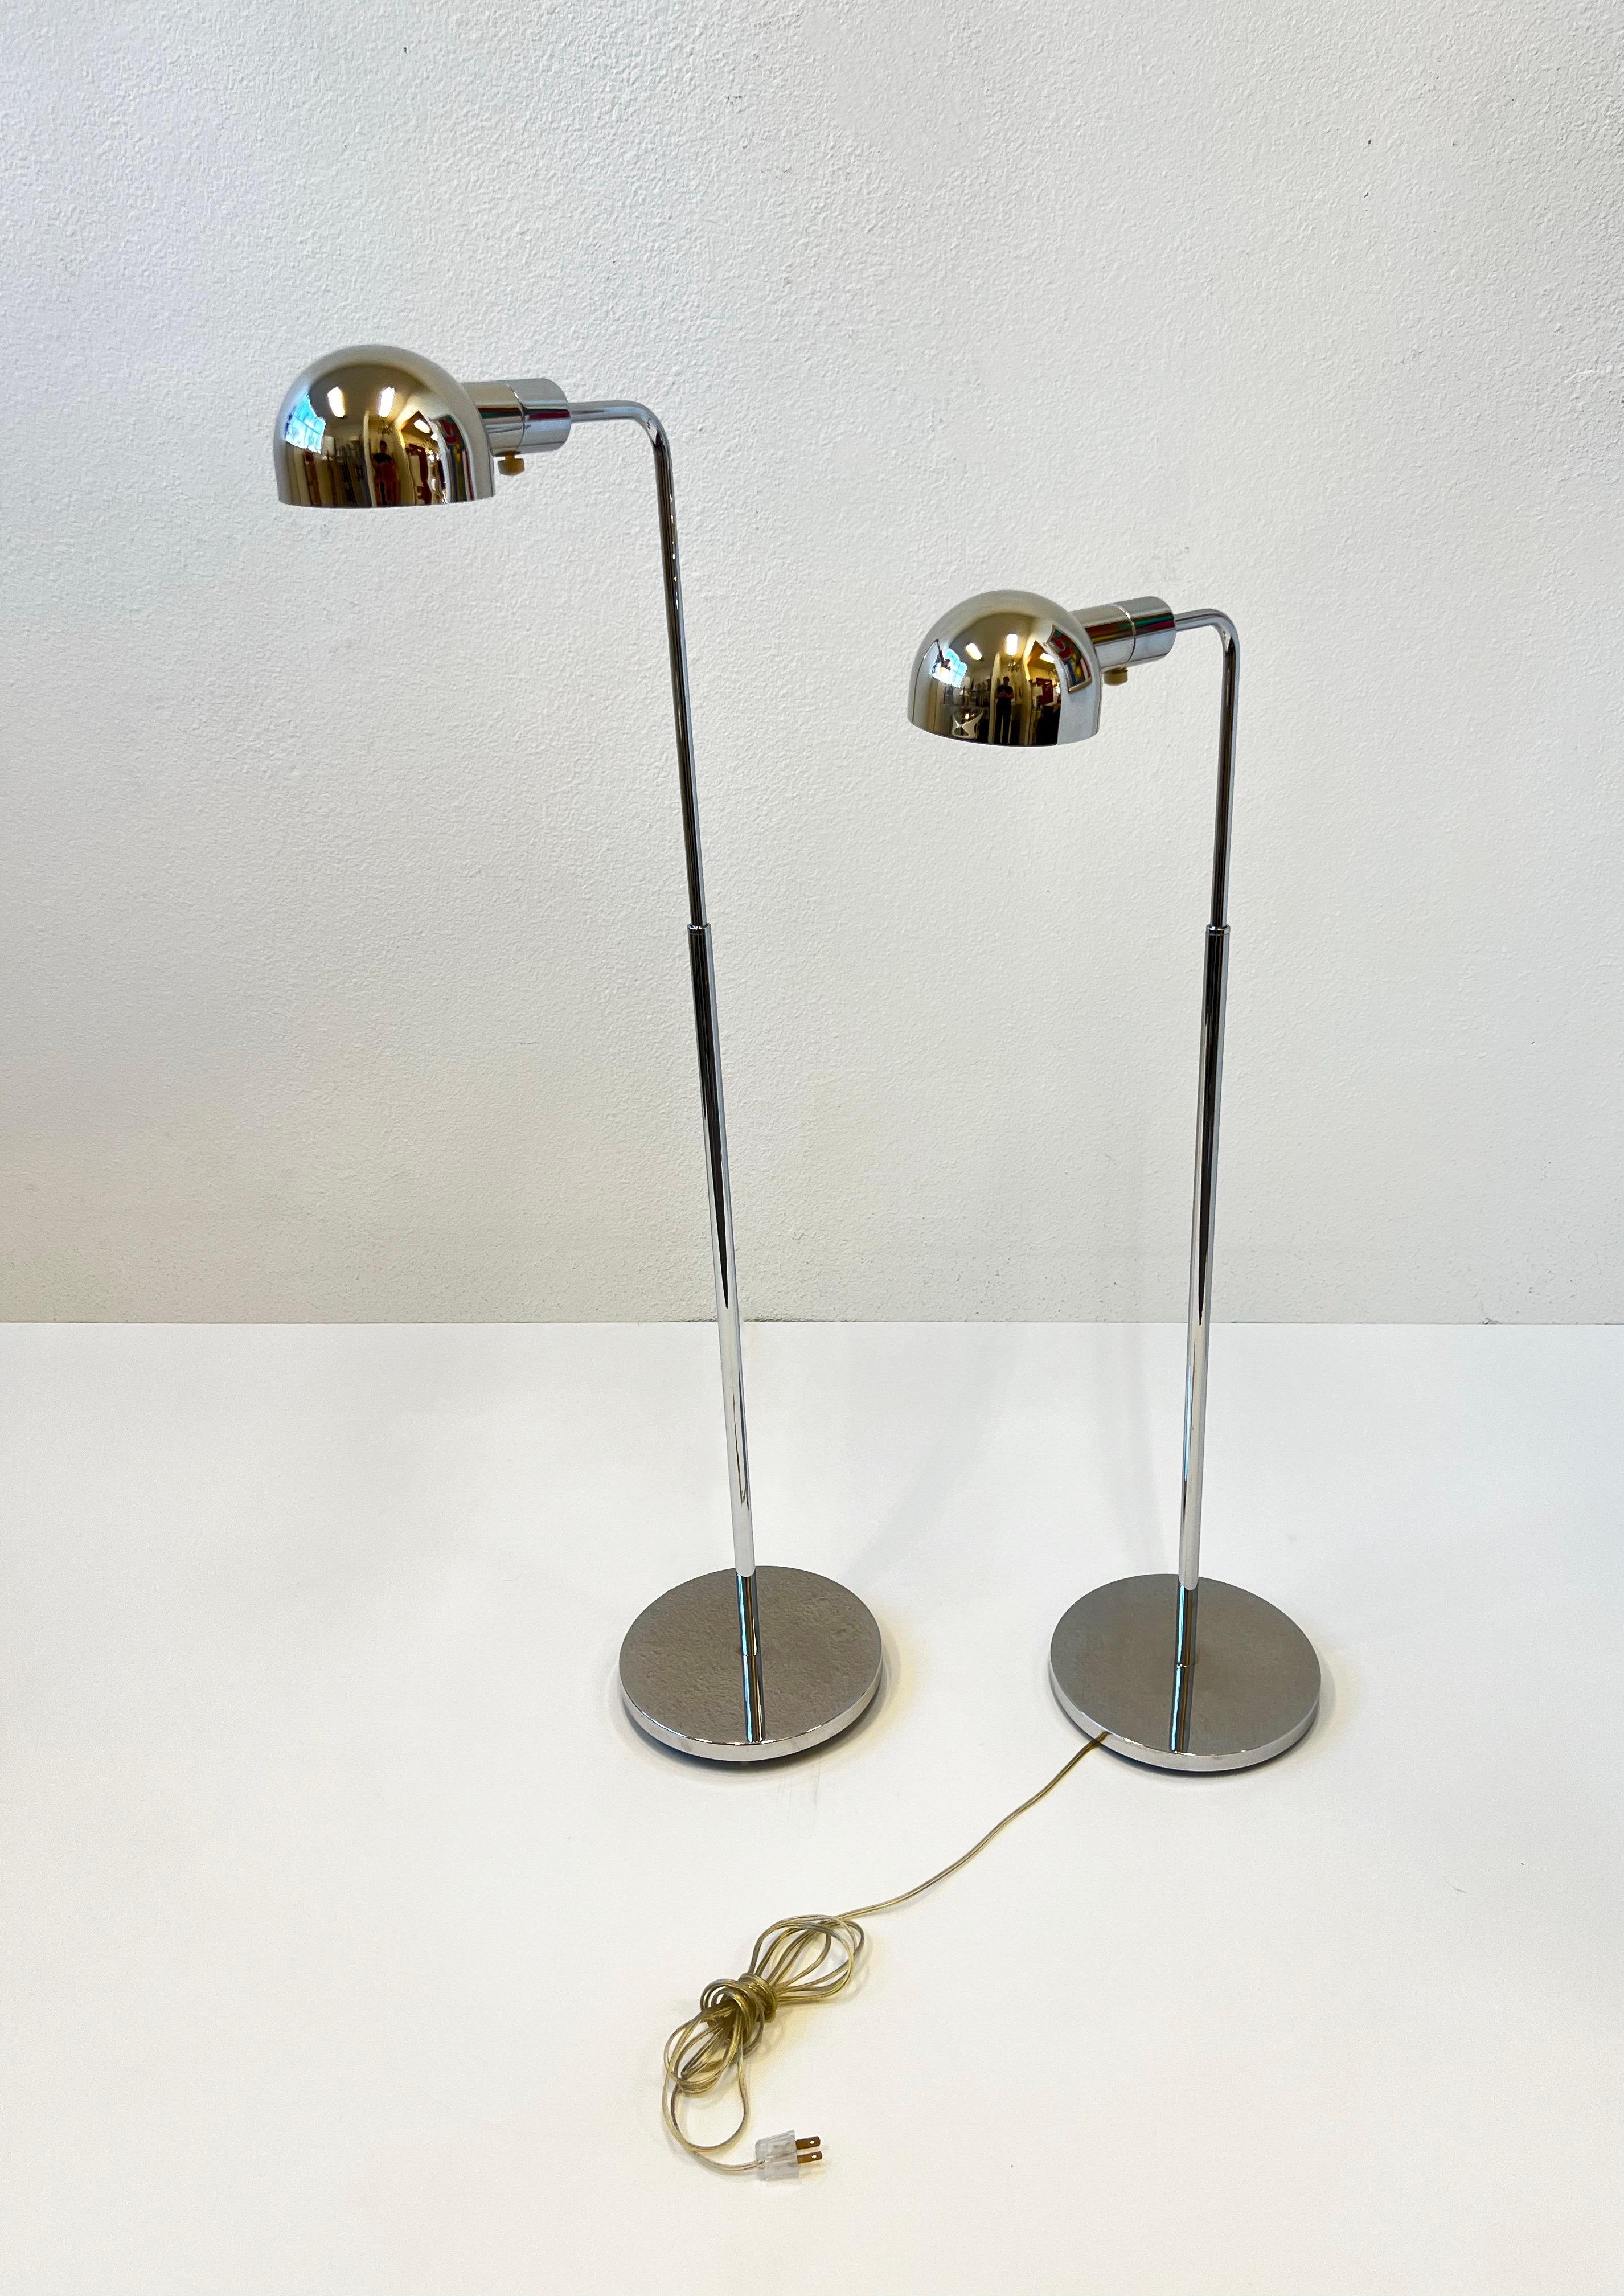 Verstellbare Stehlampen aus poliertem Chrom von Casella Lighting aus den 1980er Jahren. 
In gutem originalen Vintage-Zustand, zeigt leichte altersbedingte Gebrauchsspuren. Die Lampen sind dimmbar und können mit einer Edison-Glühbirne (max. 75 W)